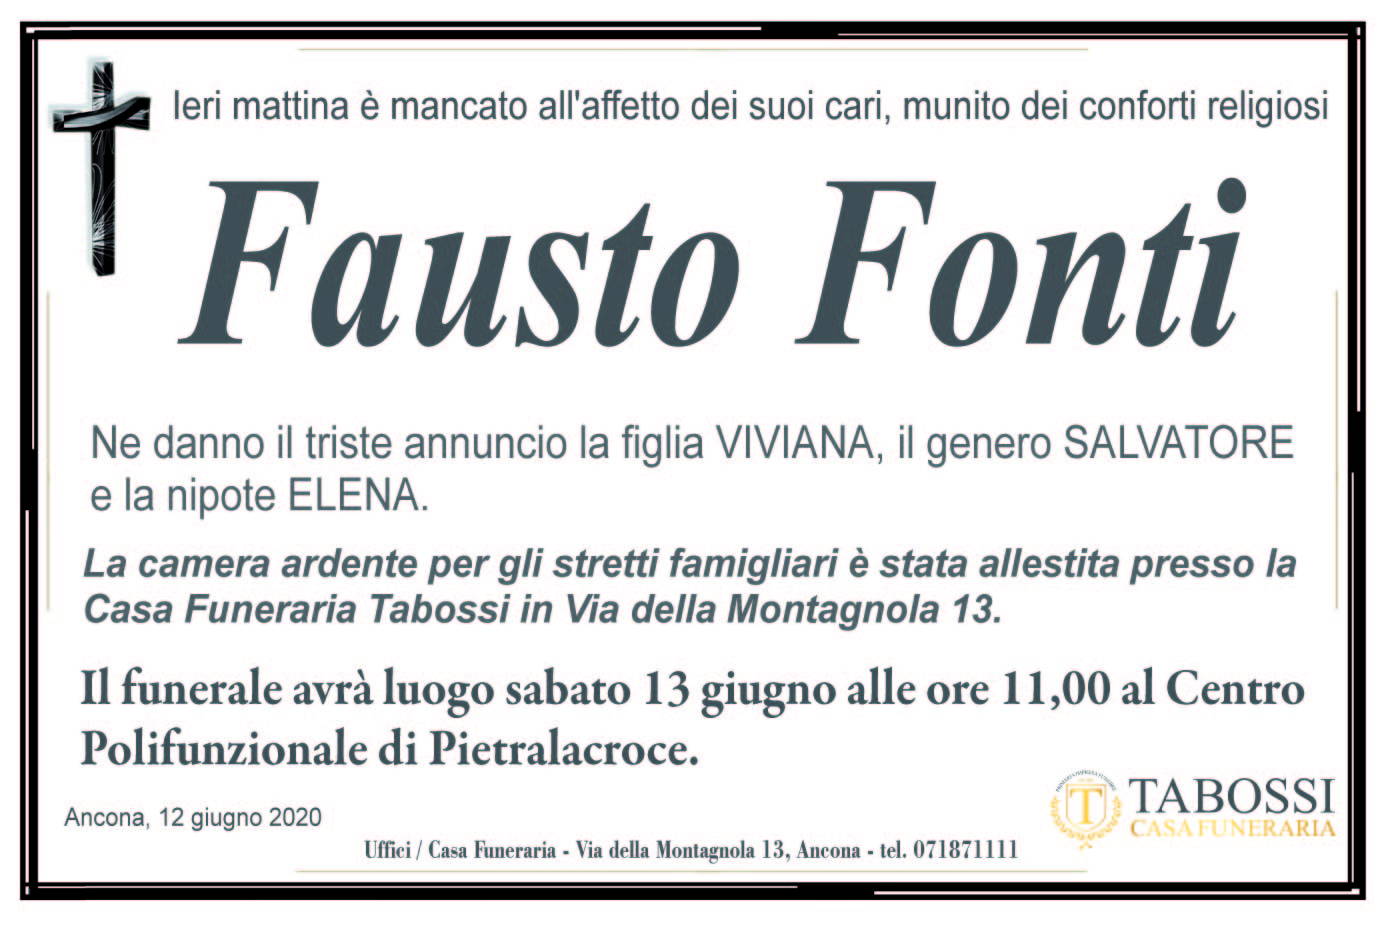 Fausto Fonti